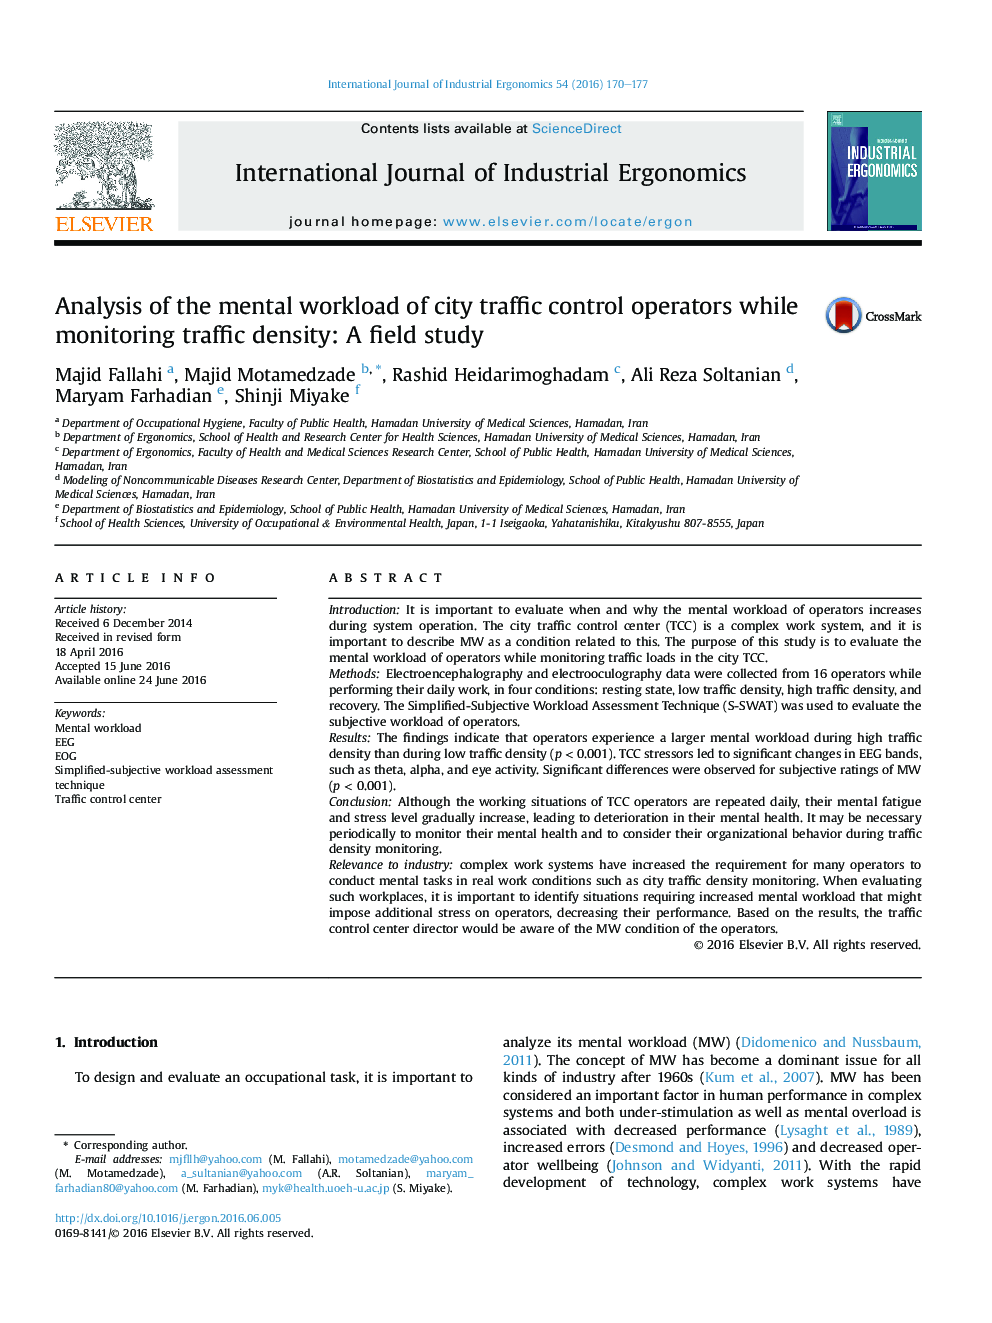 تجزیه و تحلیل حجم کار ذهنی اپراتورهای کنترل ترافیک شهر به هنگام نظارت بر تراکم ترافیک: مطالعه زمینه ای